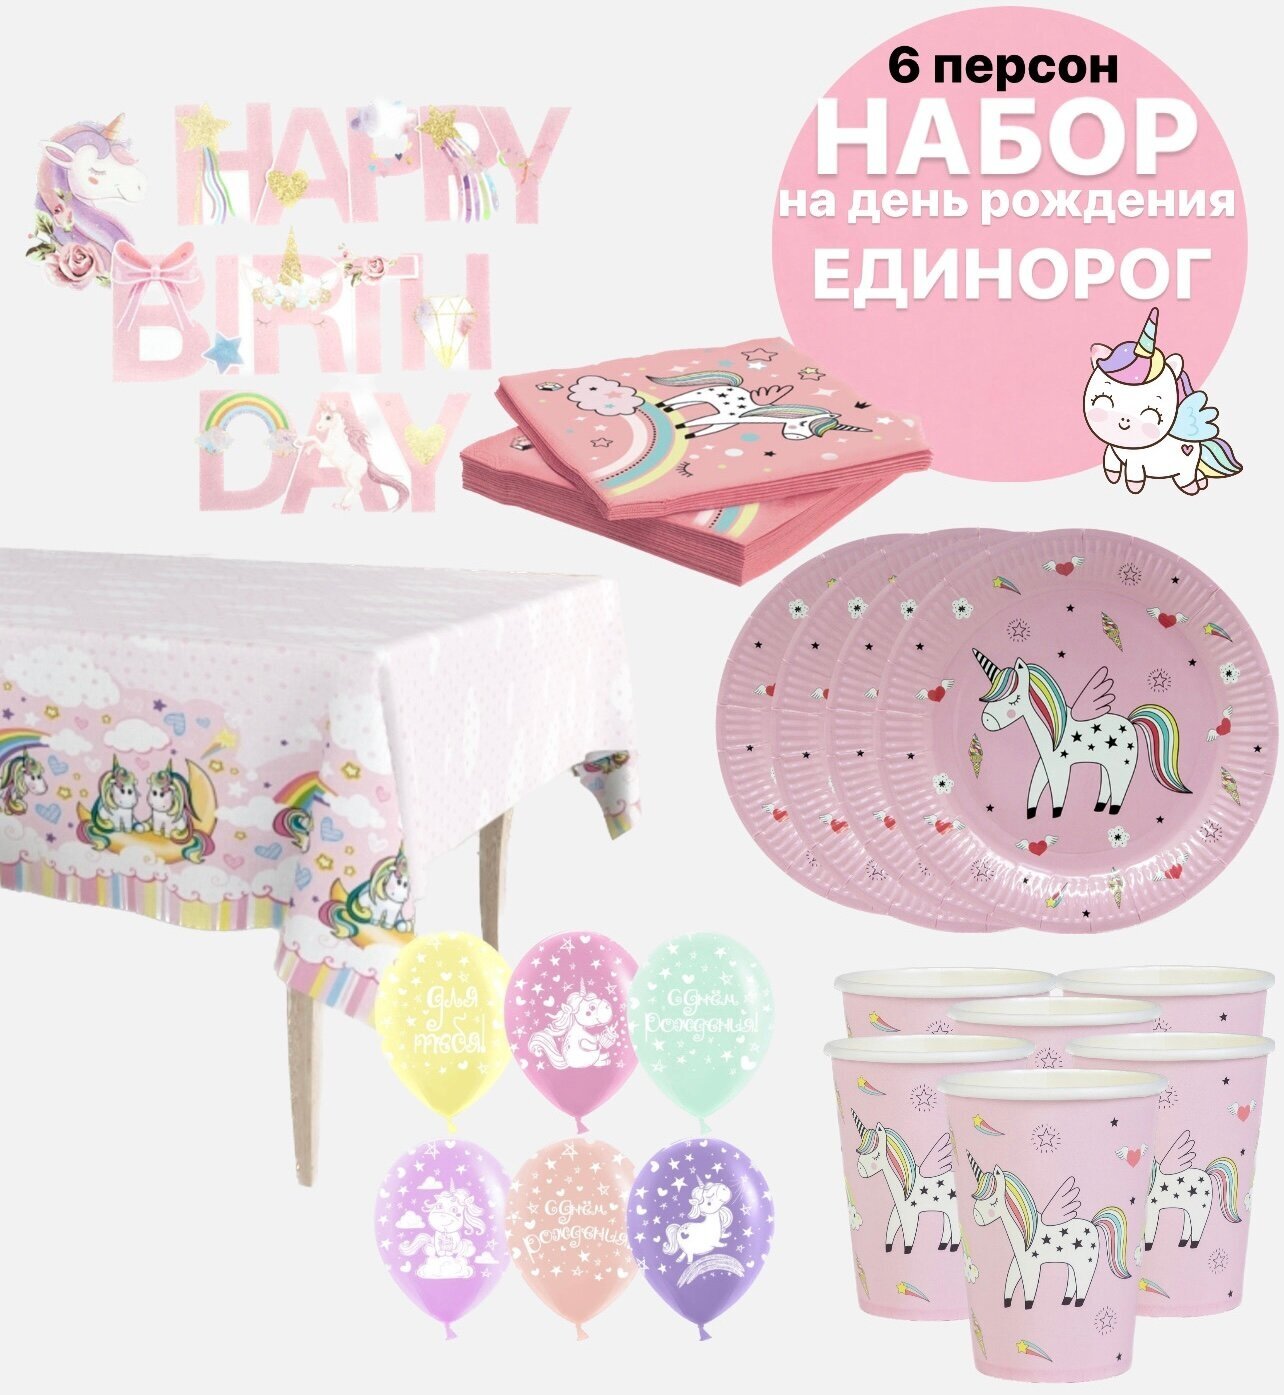 Набор для праздника на день рождения Единорог. Набор одноразовая посуда Единорог розовый